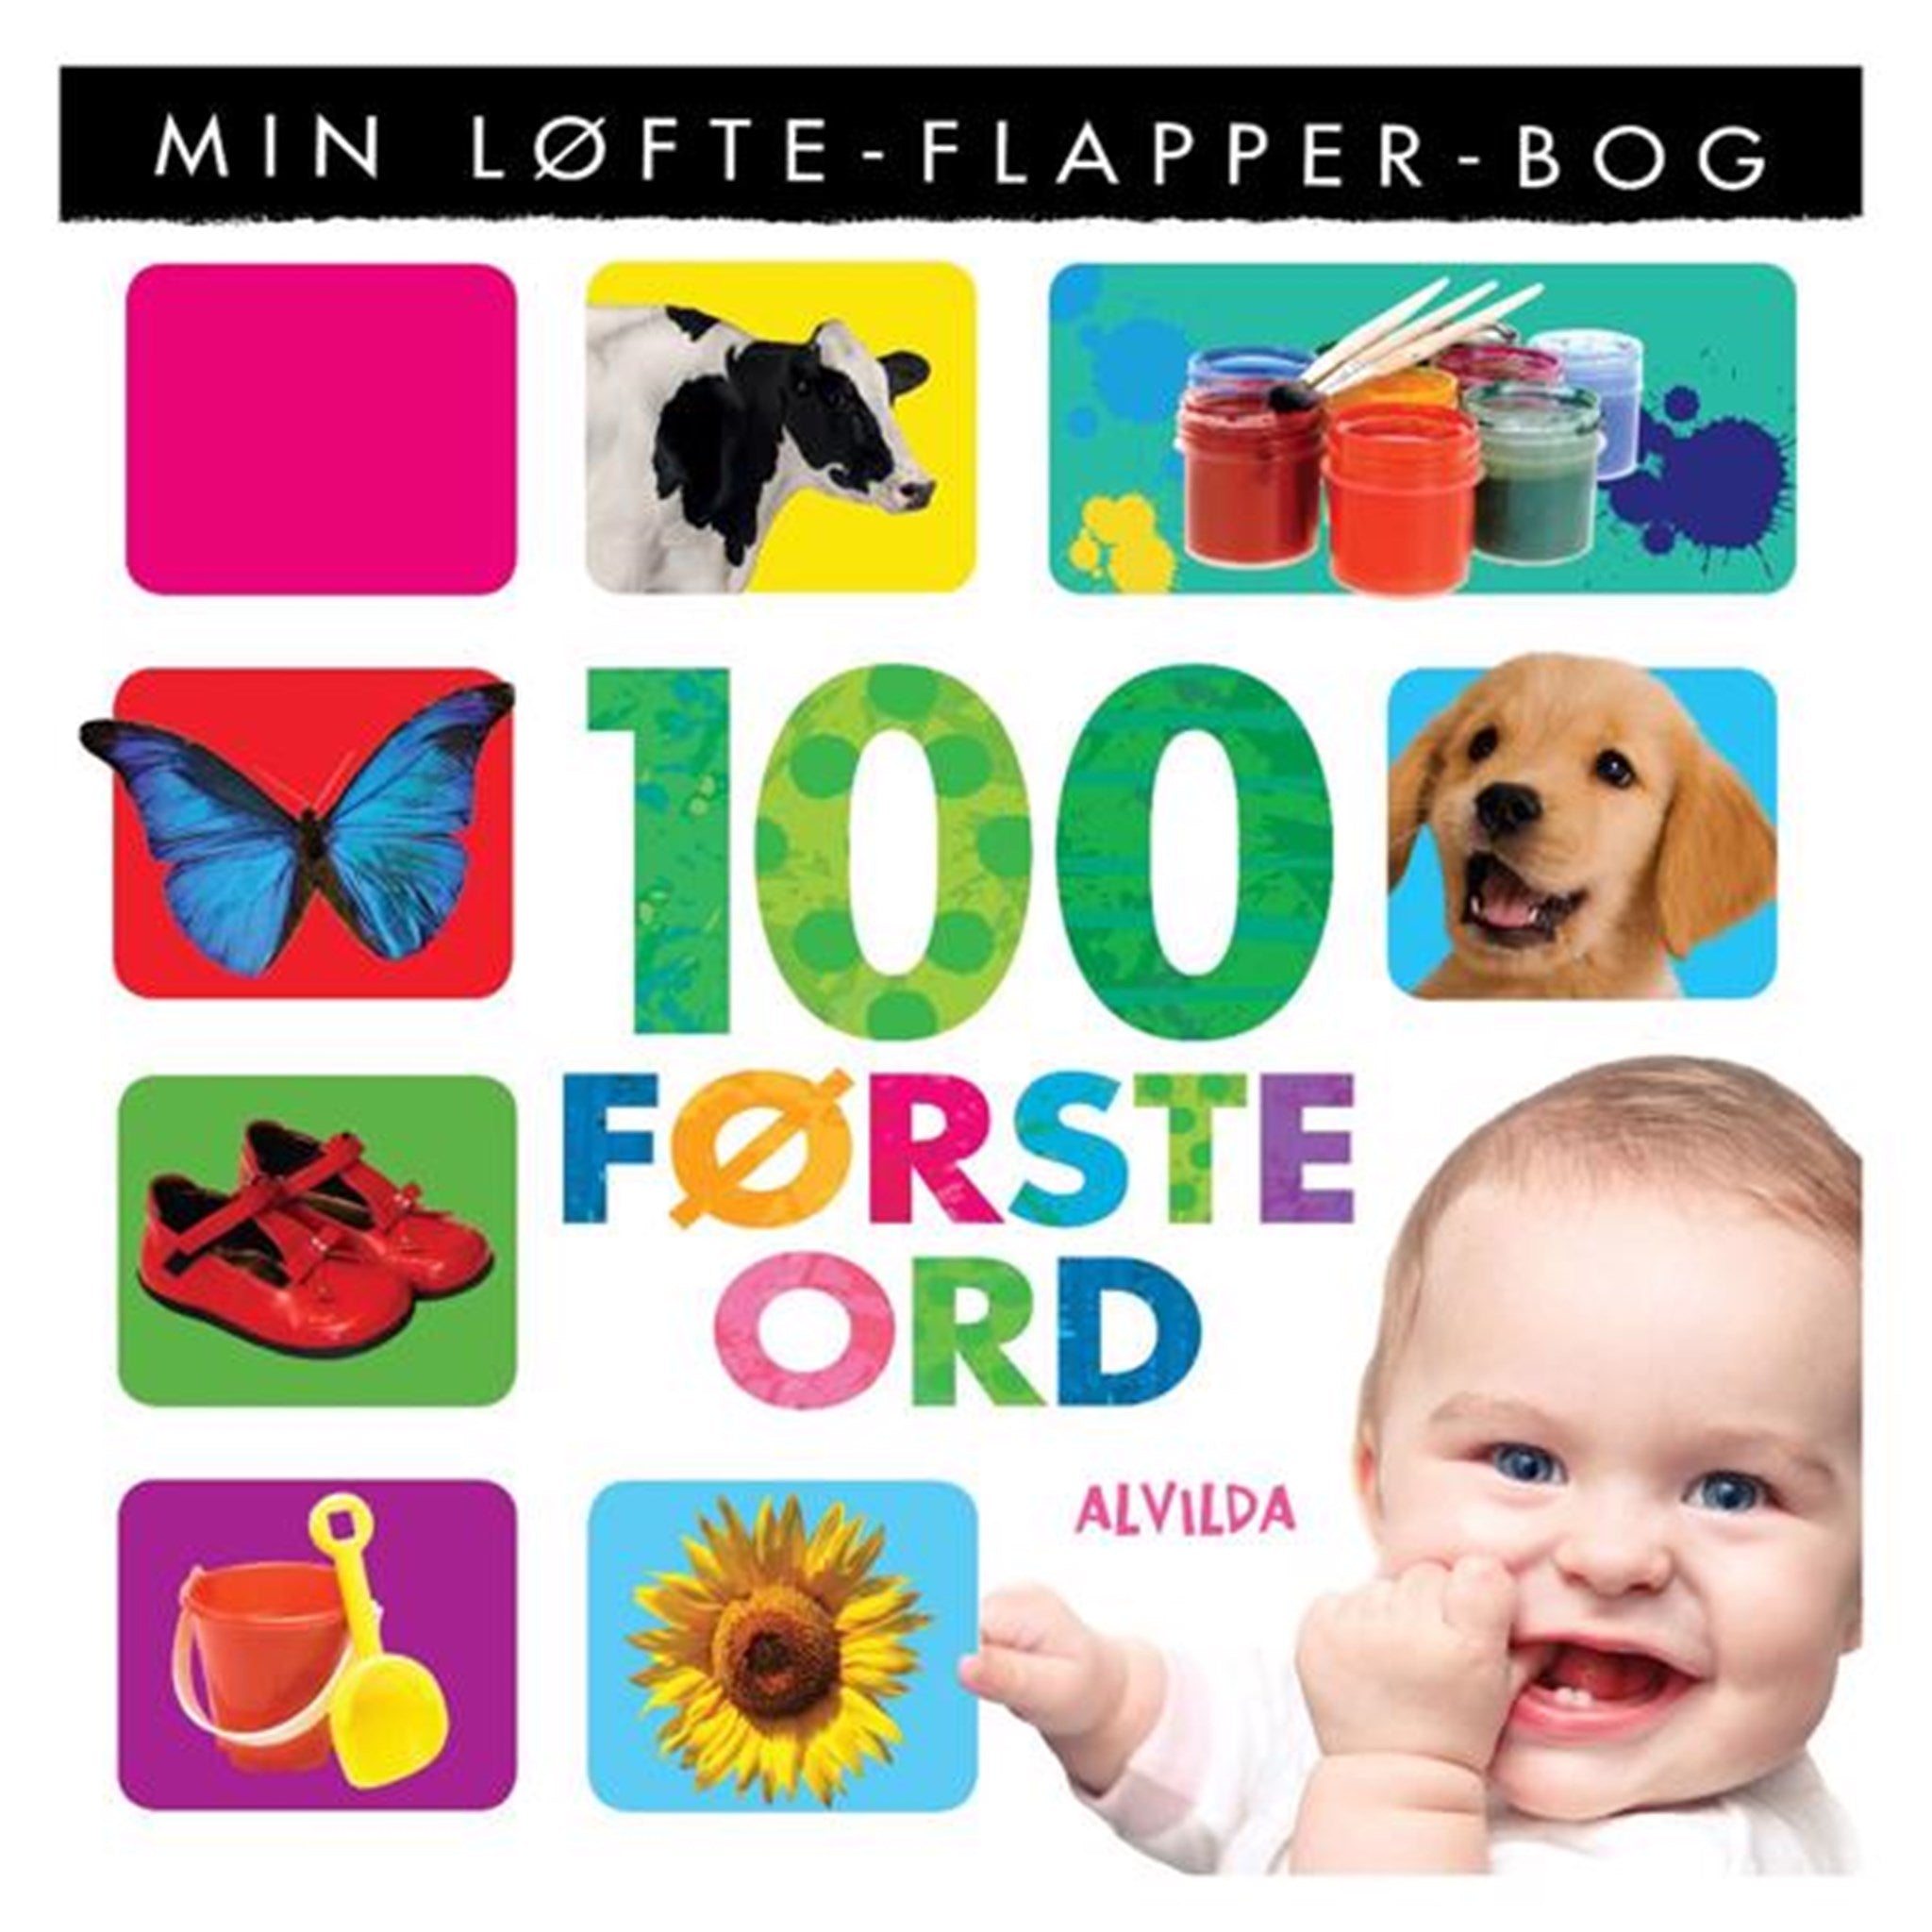 Alvilda Min Løfte-Flapper-Bog 100 Første Djur